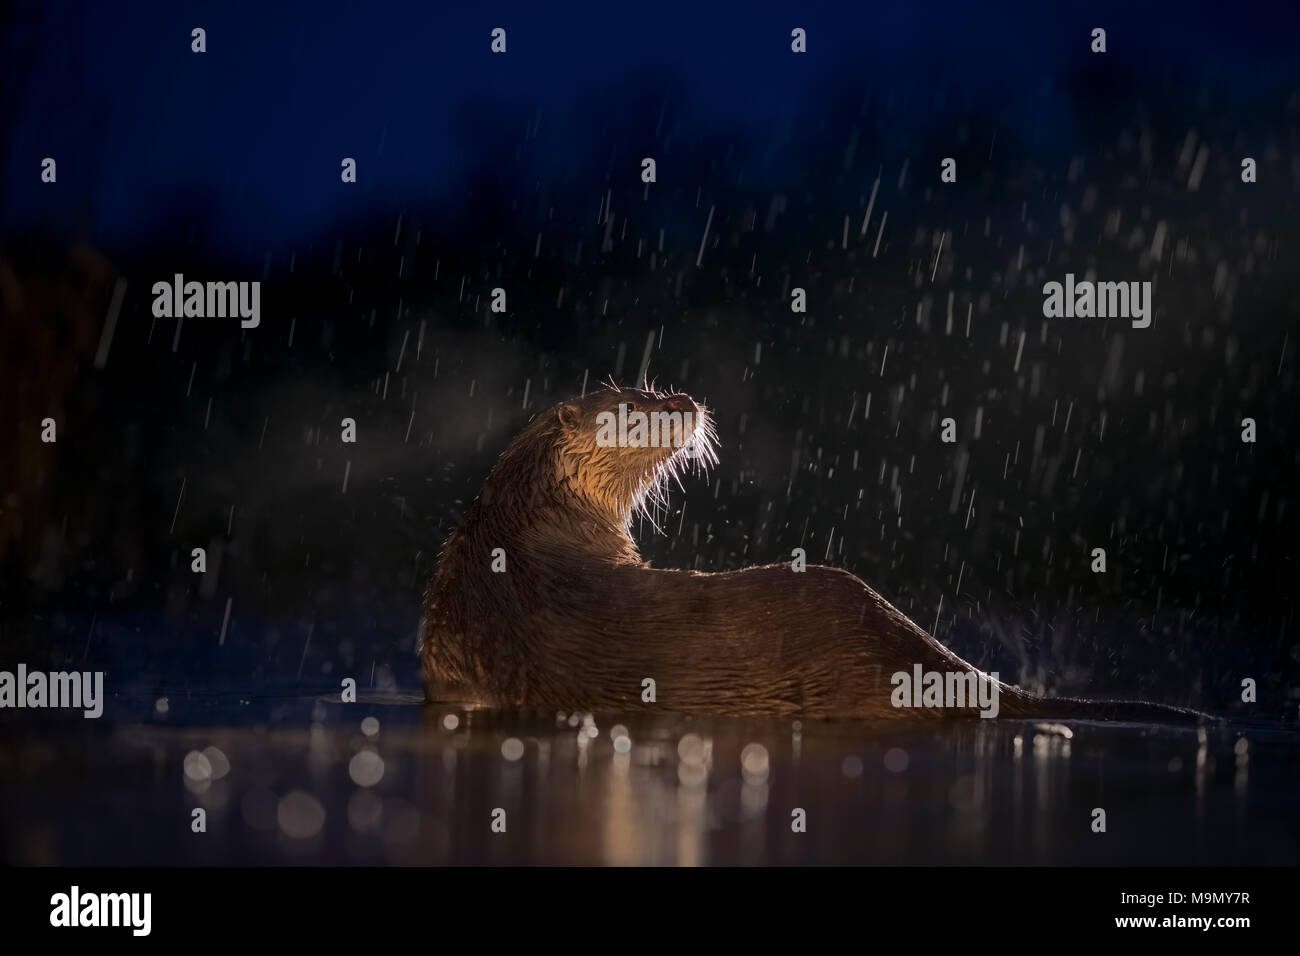 Loutre d'Europe (Lutra lutra) sur la chasse nocturne dans l'eau au cours de la pluie, de la recherche de nourriture, Parc National de Kiskunság, Hongrie Banque D'Images